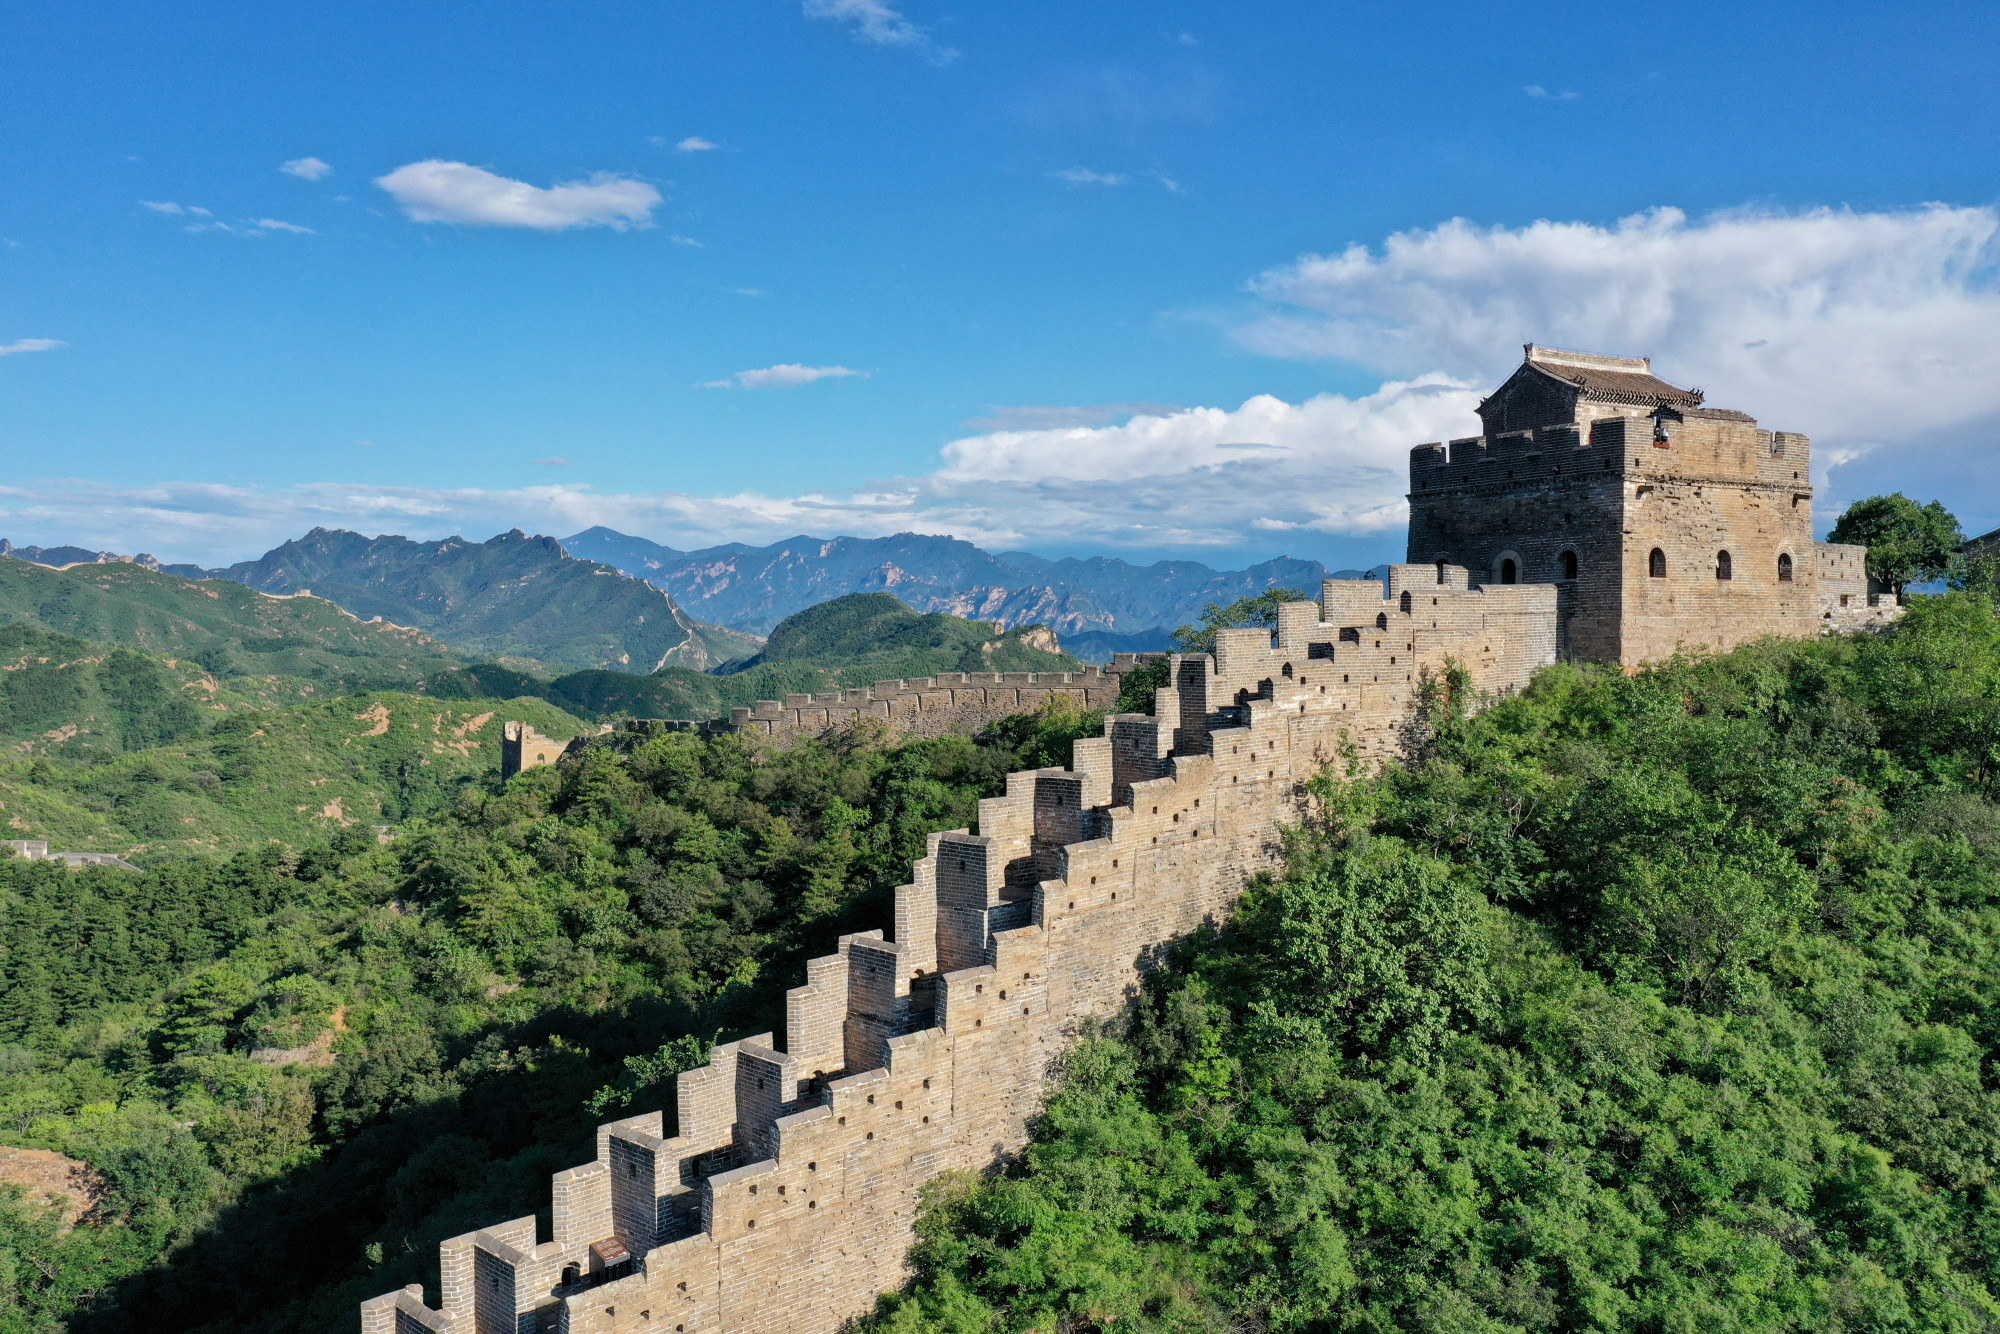 Pár munkás lerombolta a kínai nagy fal egy részét, mert útban volt